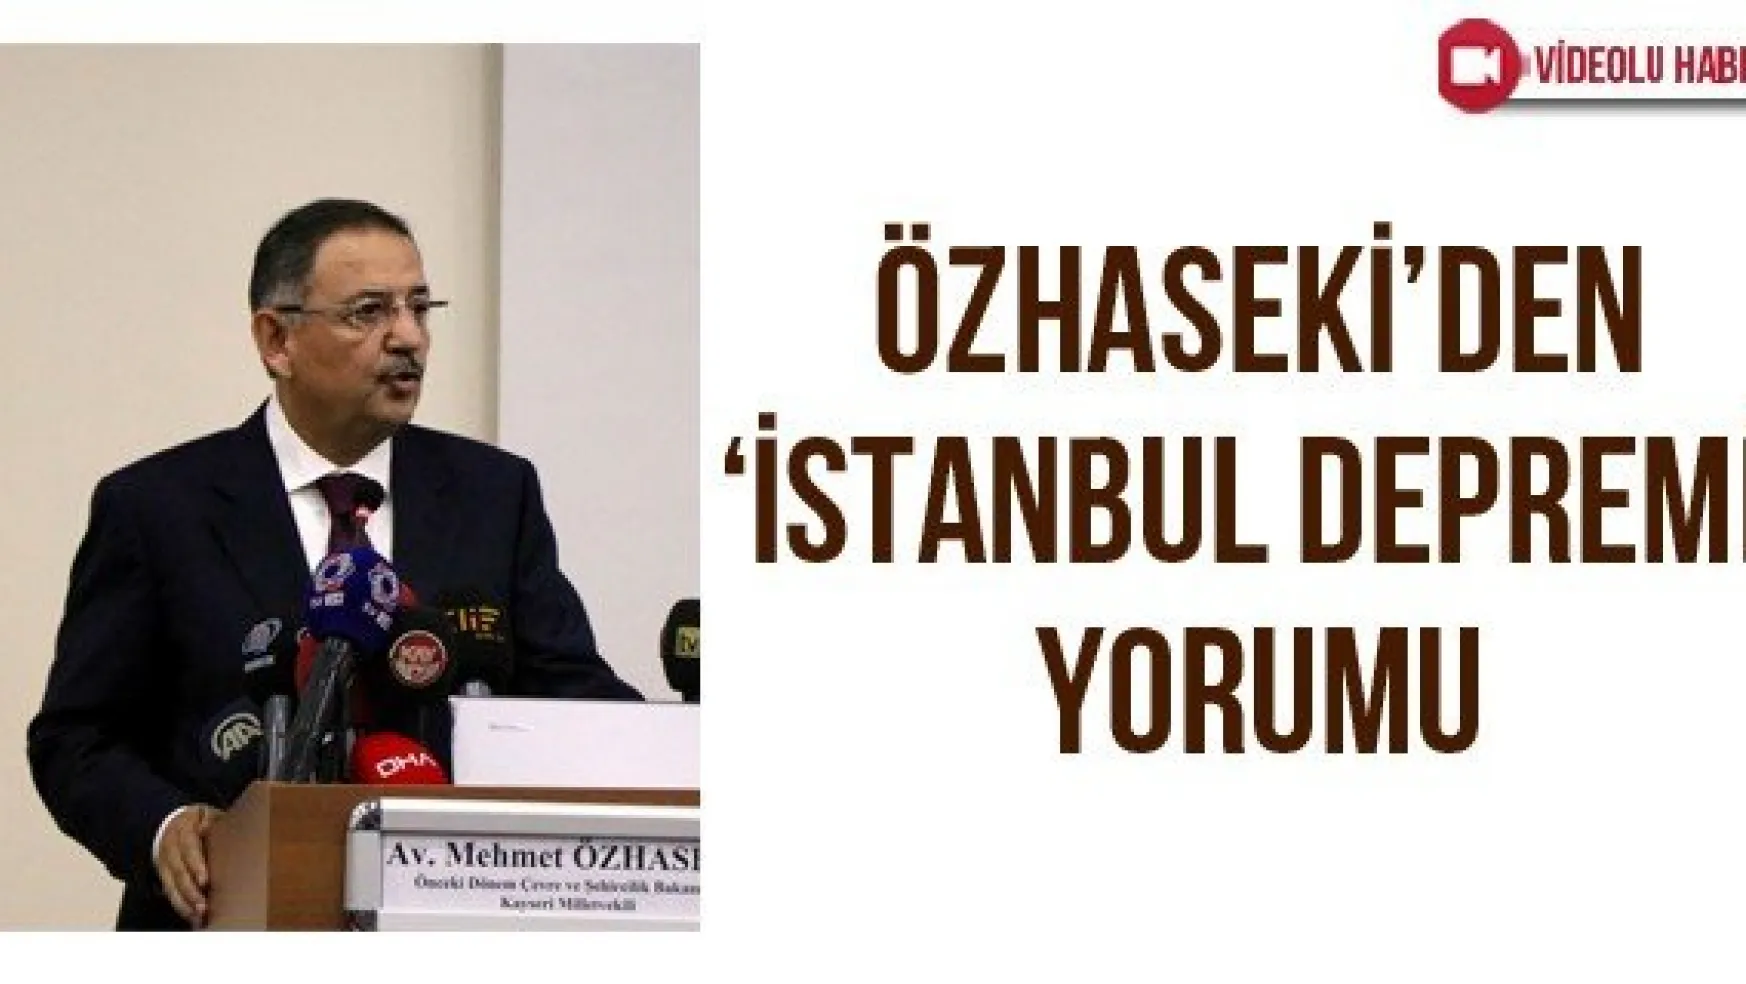 Özhaseki'den 'İstanbul depremi' yorumu